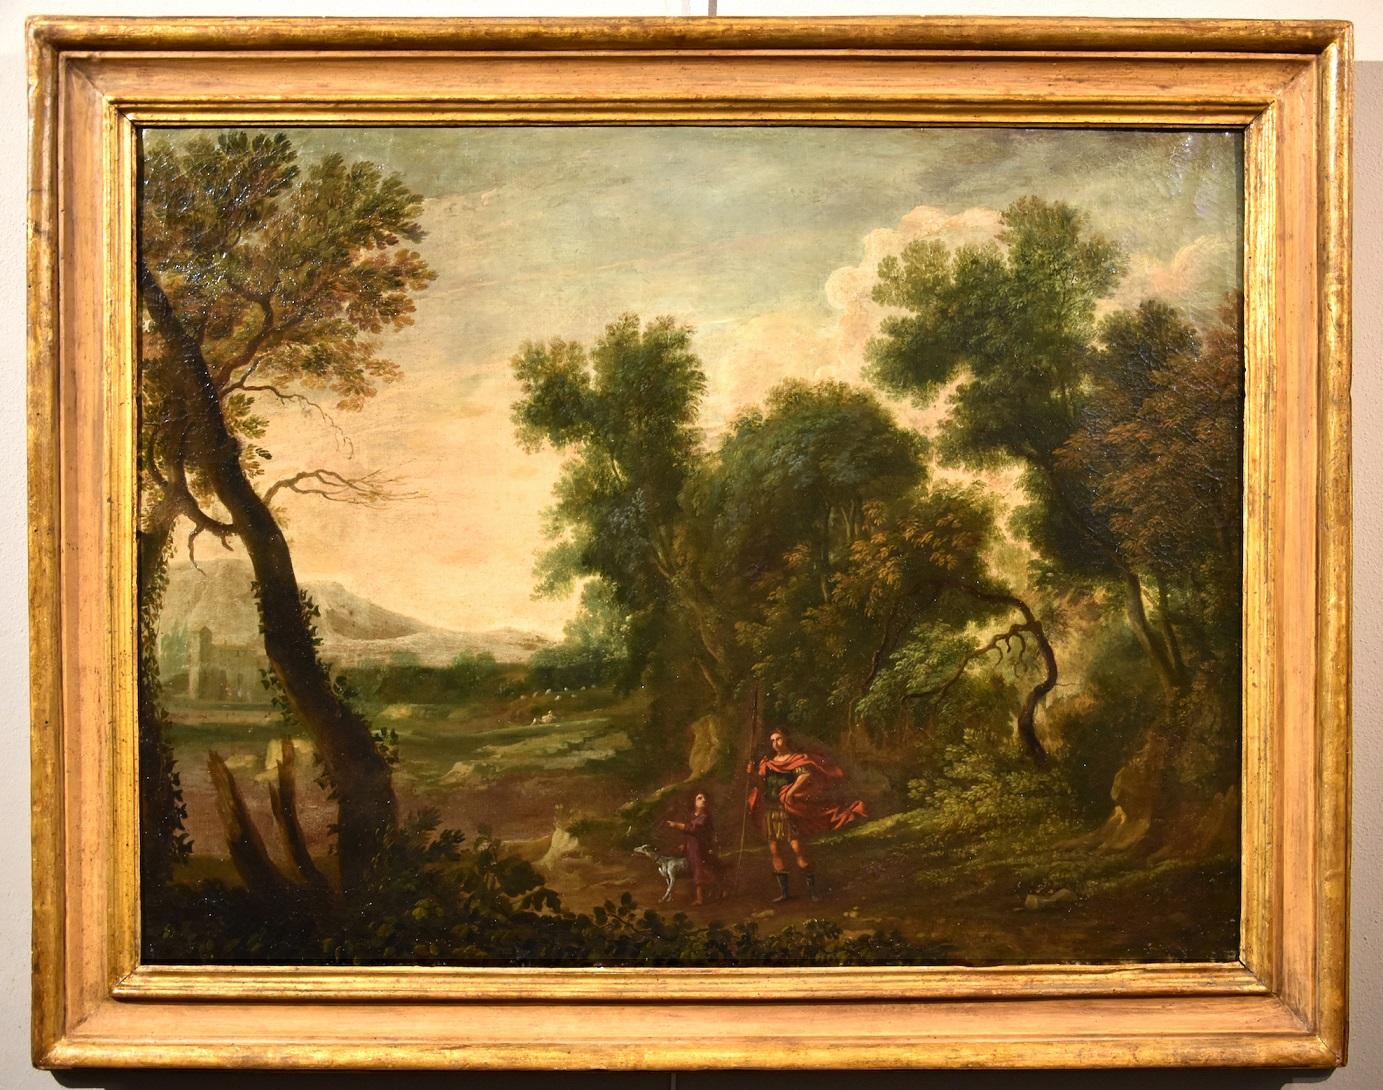 Dughet Woodland Landscape Old Master Paint Huile sur toile 17ème siècle Italie Art - Painting de Gaspard Dughet, called Gaspard Poussin (Rome 1615 - 1675)